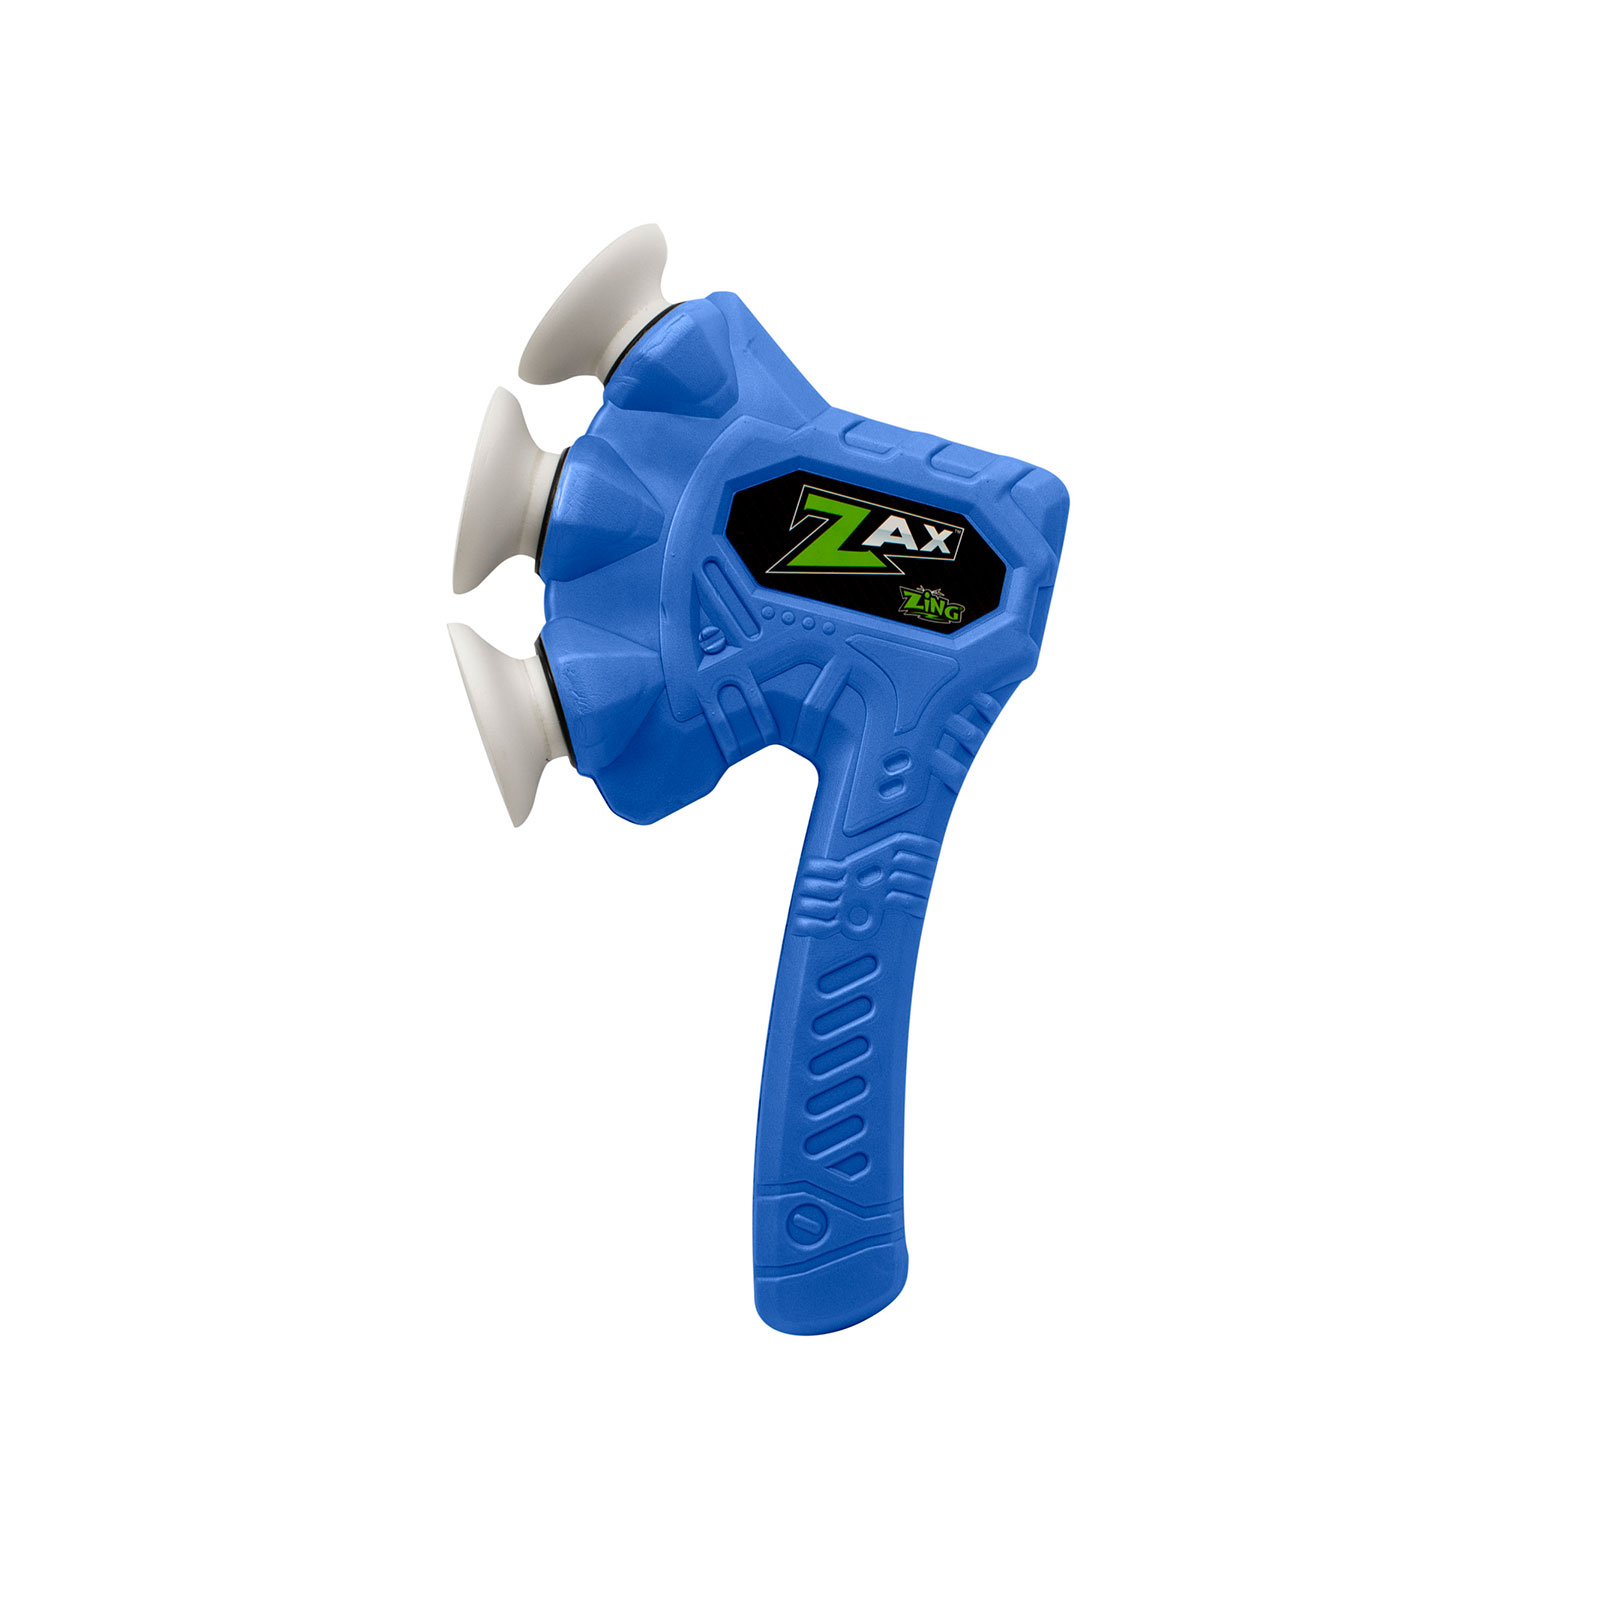 Игрушечное оружие Zing топор Air Storm - Zax синий (ZG508B)